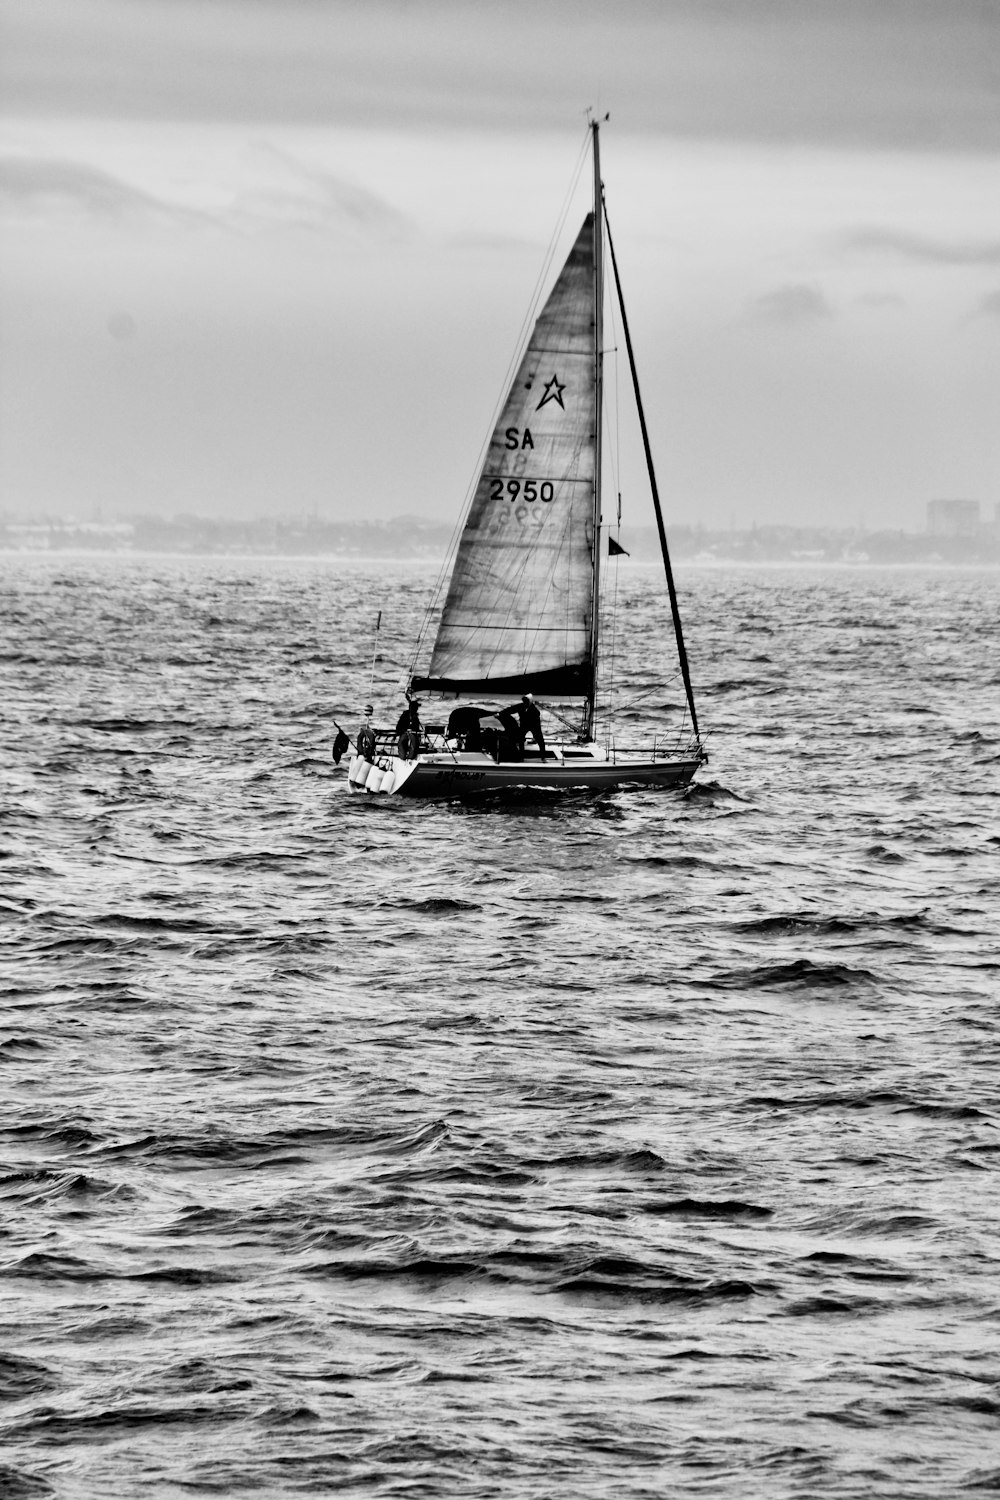 Une photo en noir et blanc d’un voilier dans l’océan